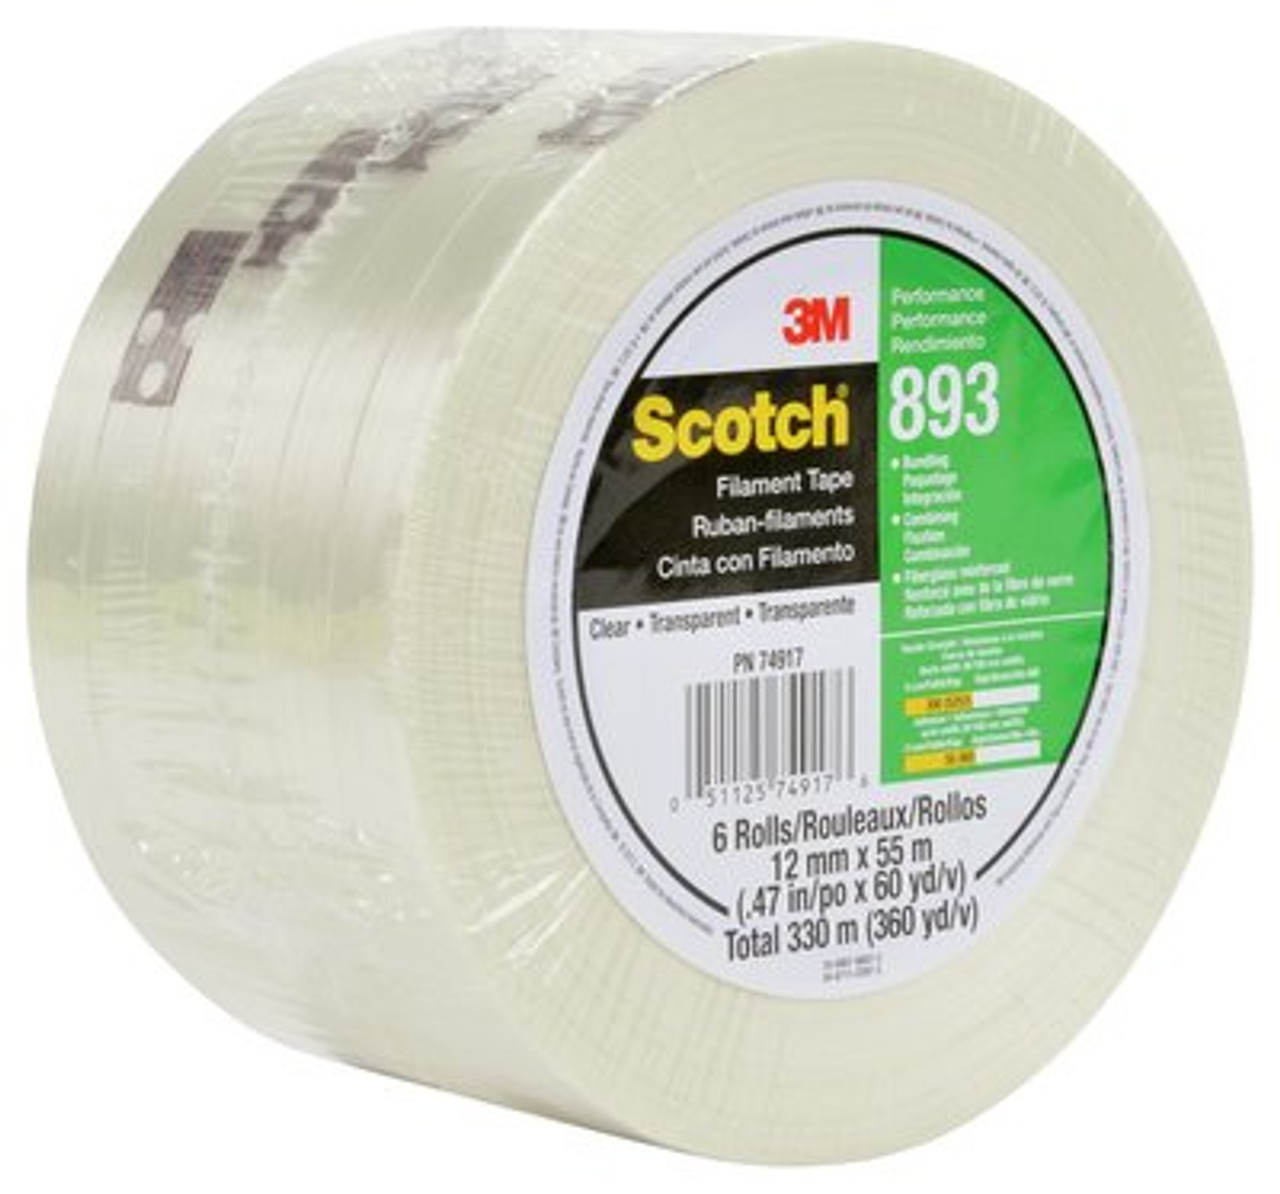 Scotch® Filament Tape 893 PN6939 Clear, 24 mm x 55 m